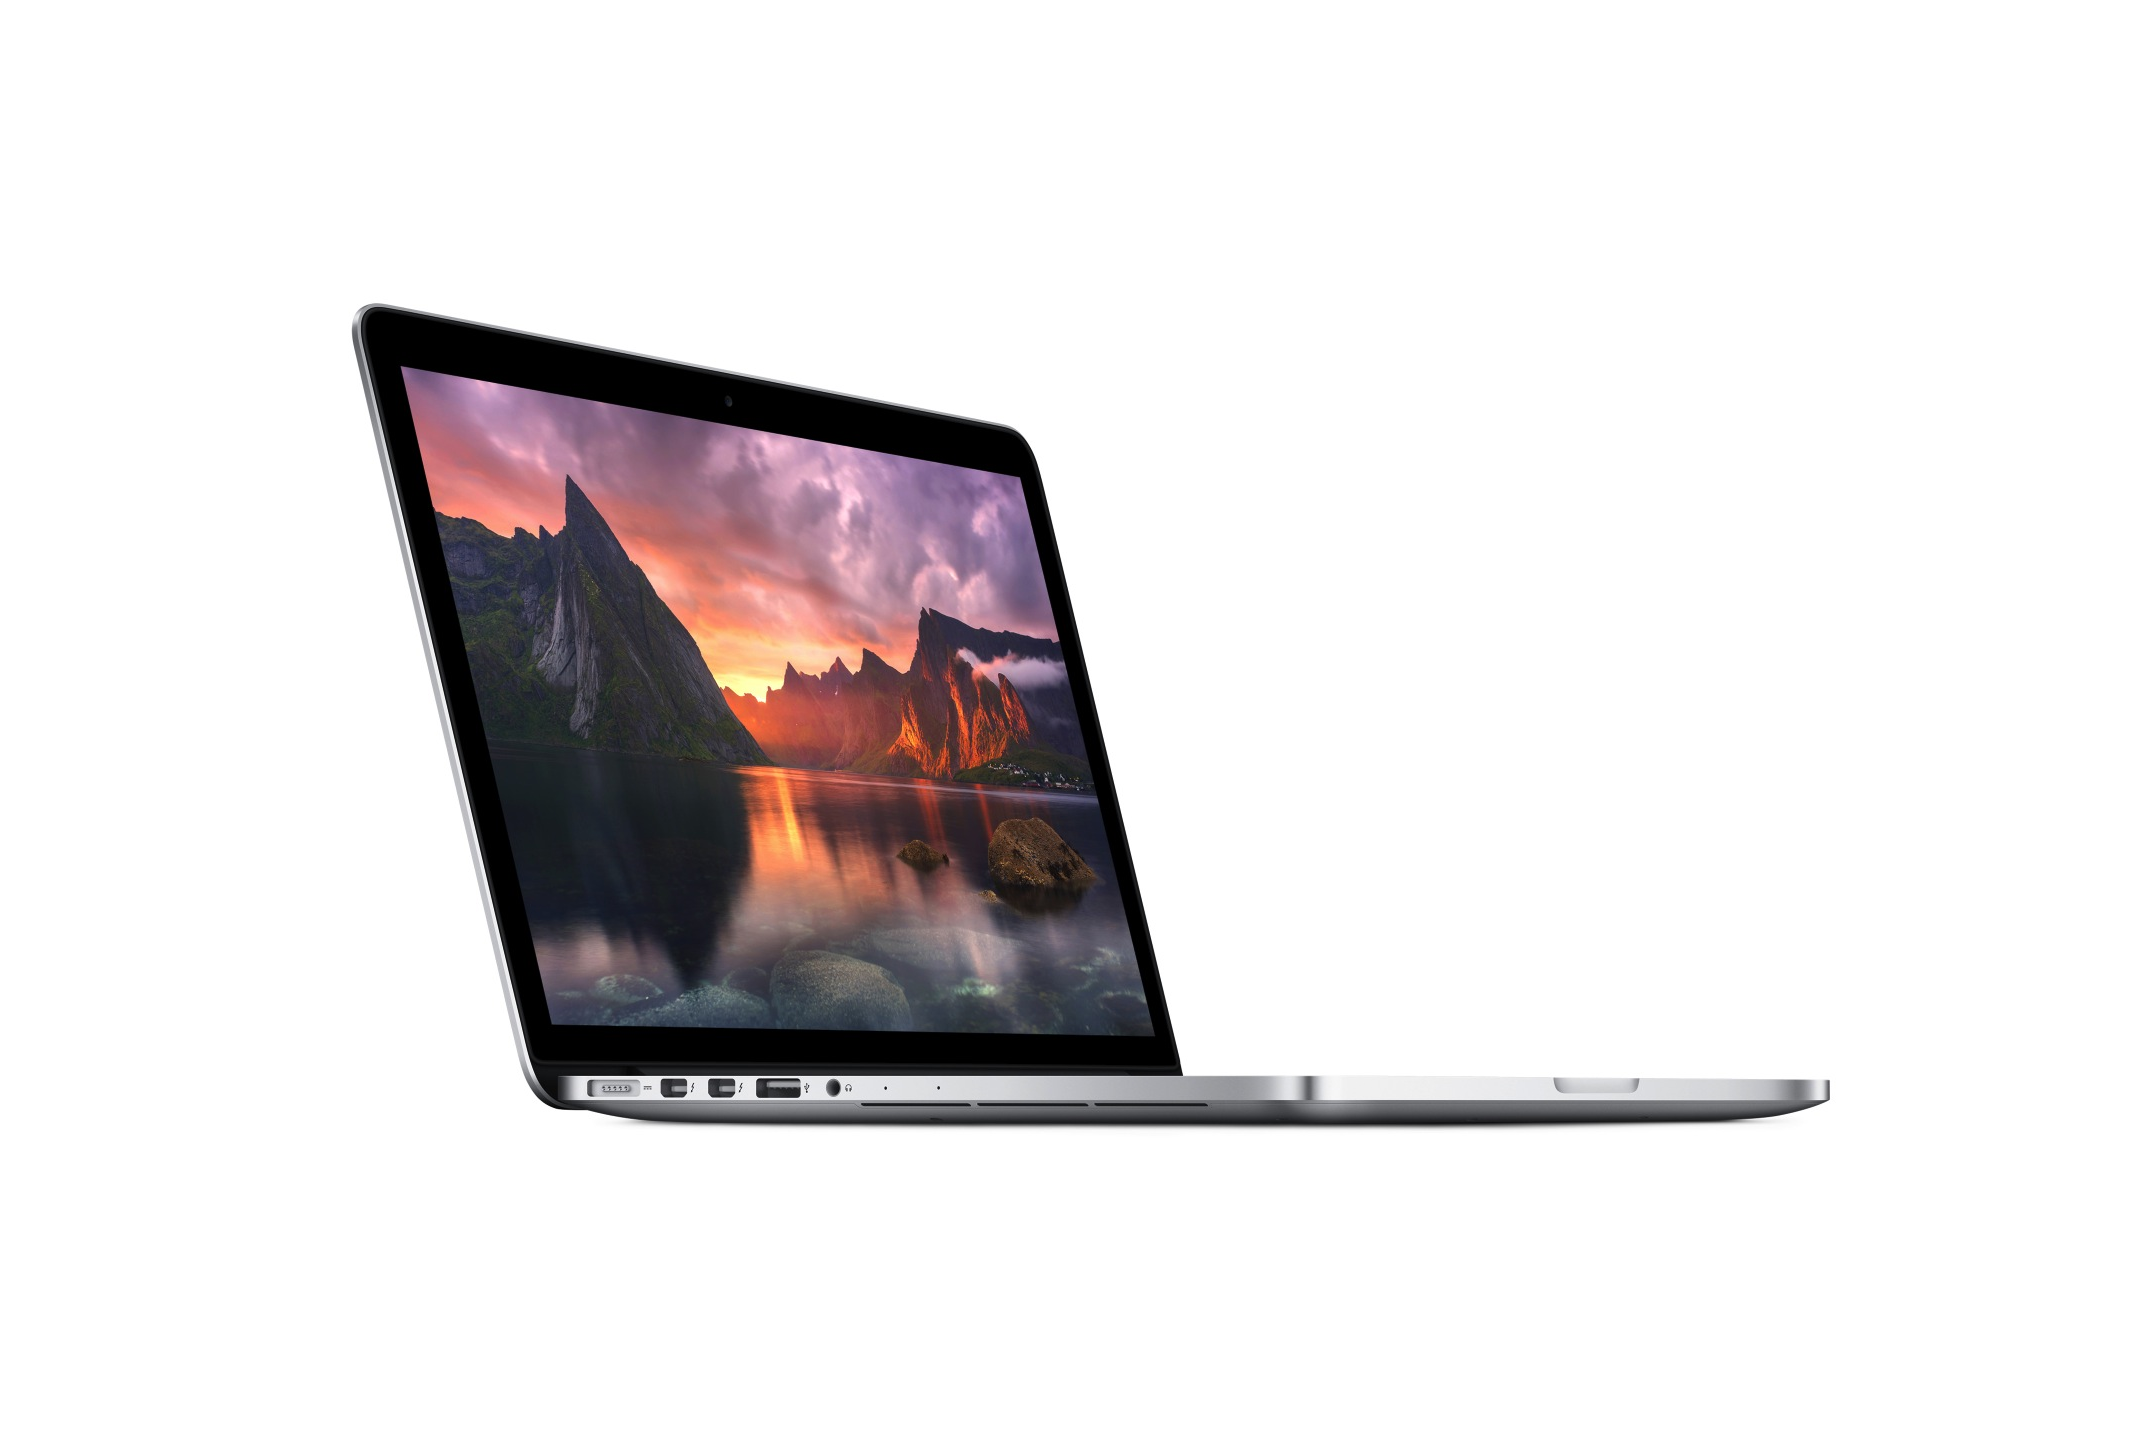 Macbook pro 13 экран. MACBOOK Pro 13 2015. 13.3" Ноутбук Apple MACBOOK Pro. Apple MACBOOK Pro 13 Retina 2014. Apple MACBOOK Pro Retina, 13-inch, Mid 2014.